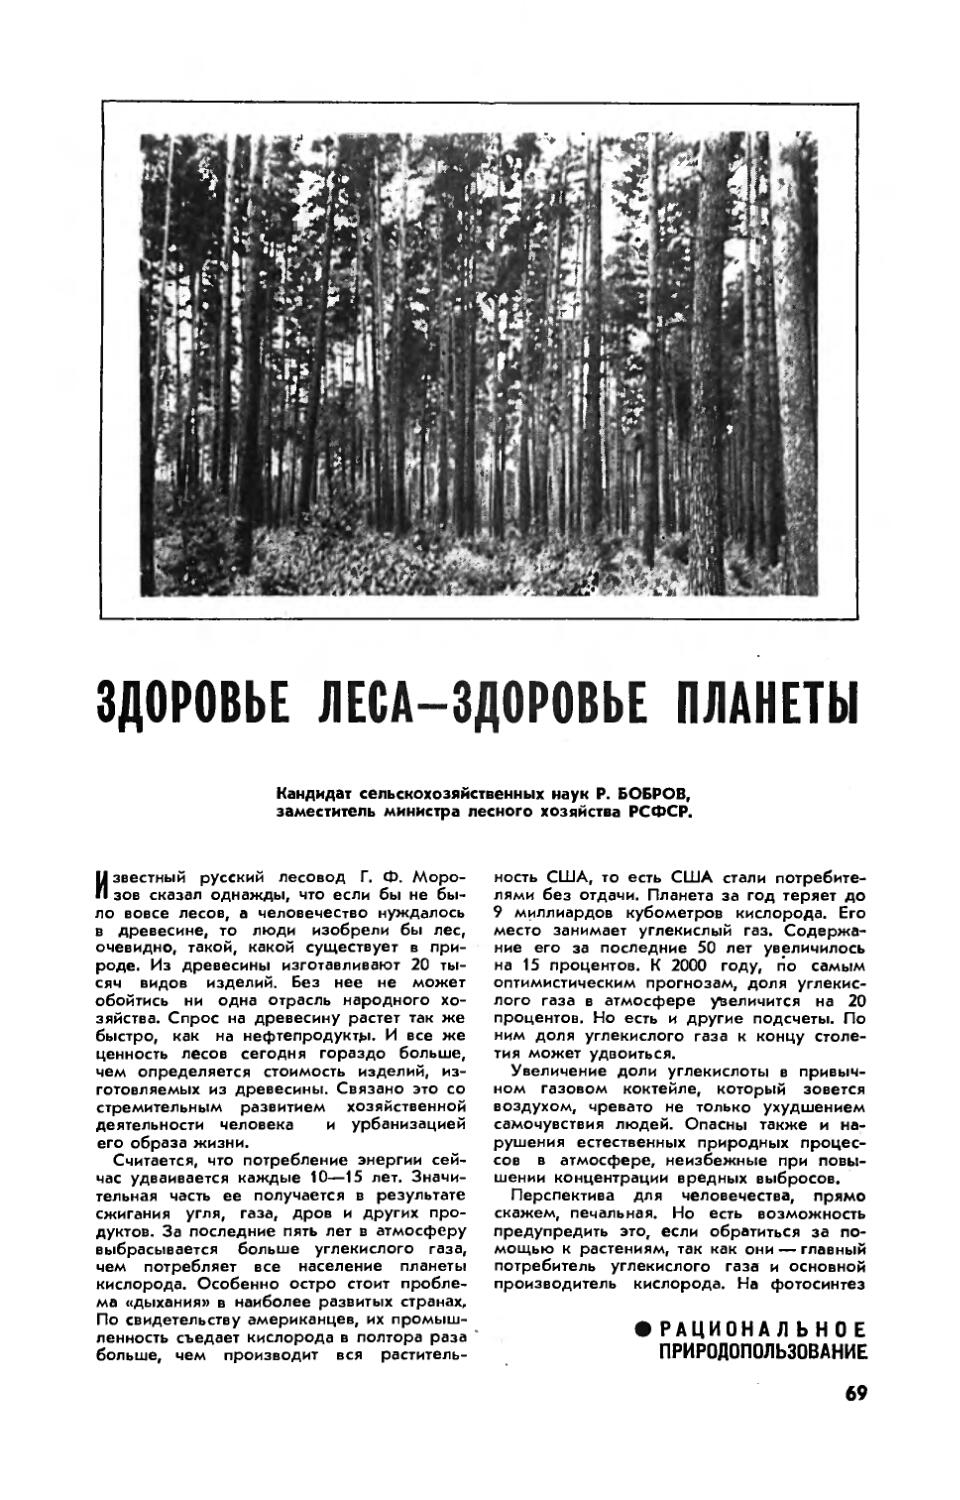 Р. БОБРОВ, канд. с.-х. наук — Здоровье леса — здоровье планеты